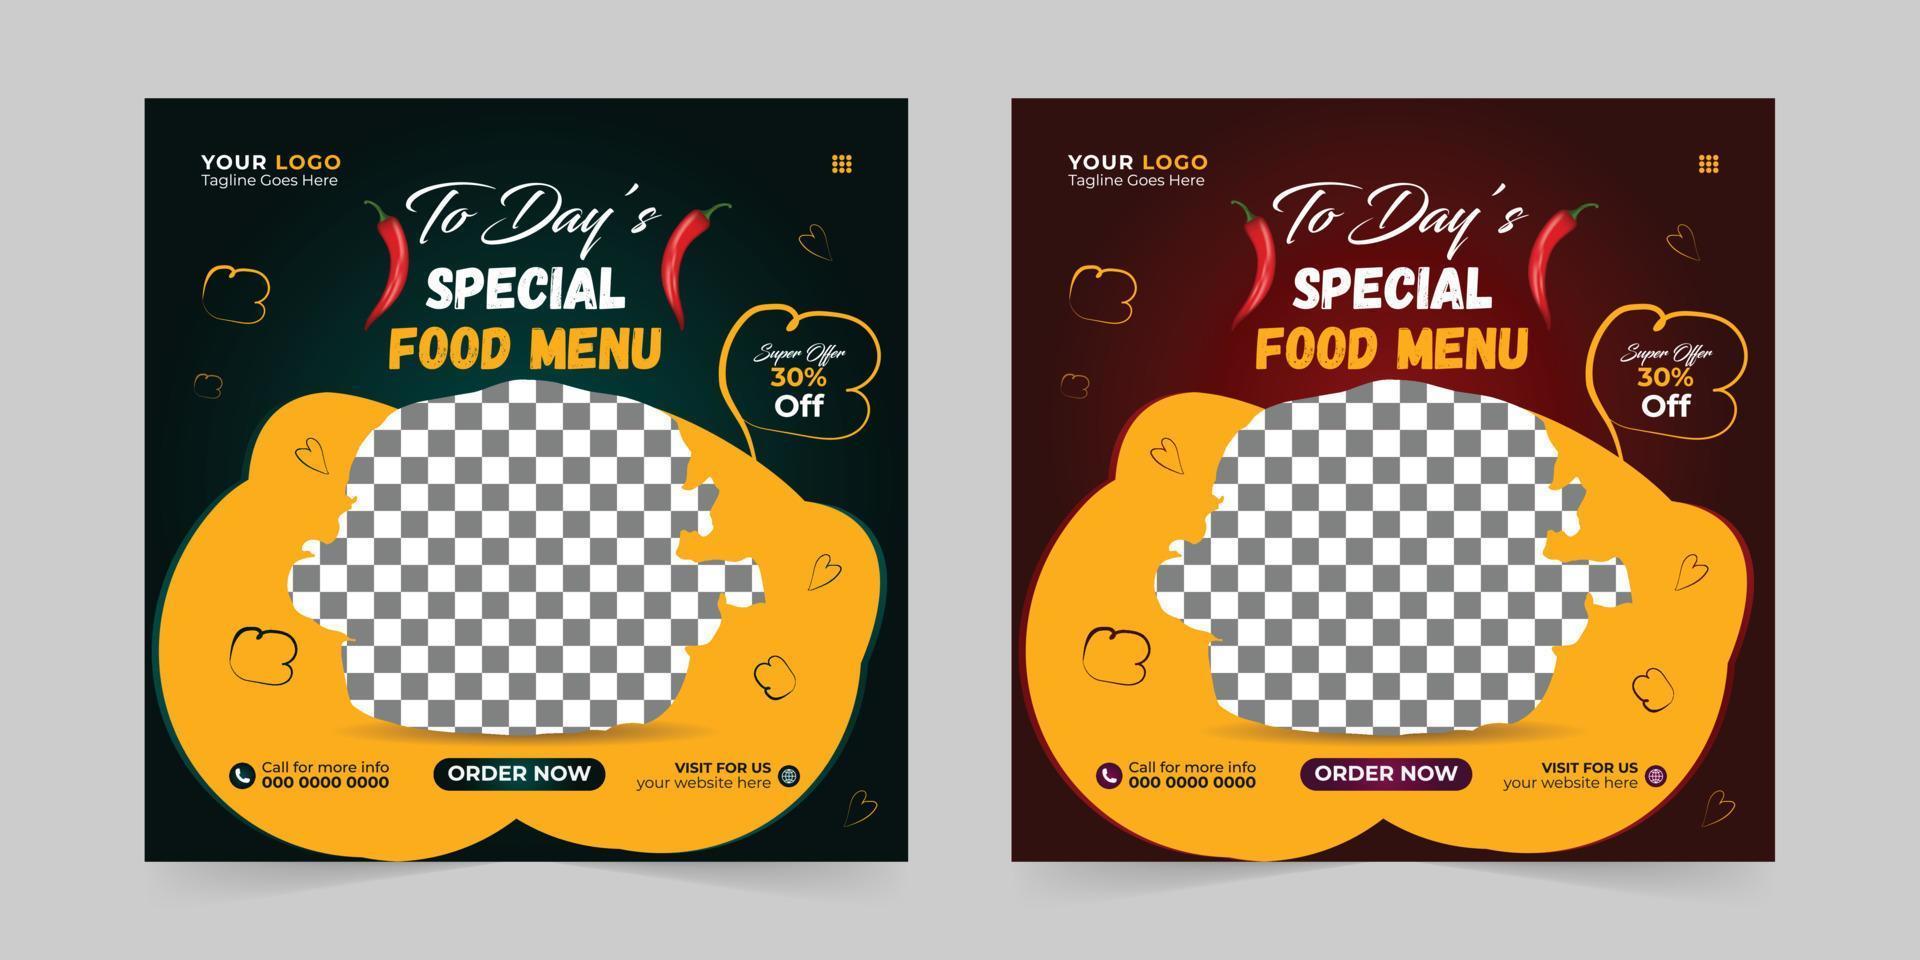 editable comida menú restaurante negocio márketing social medios de comunicación enviar y digital márketing promoción anuncios ventas y descuento web bandera vector modelo diseño